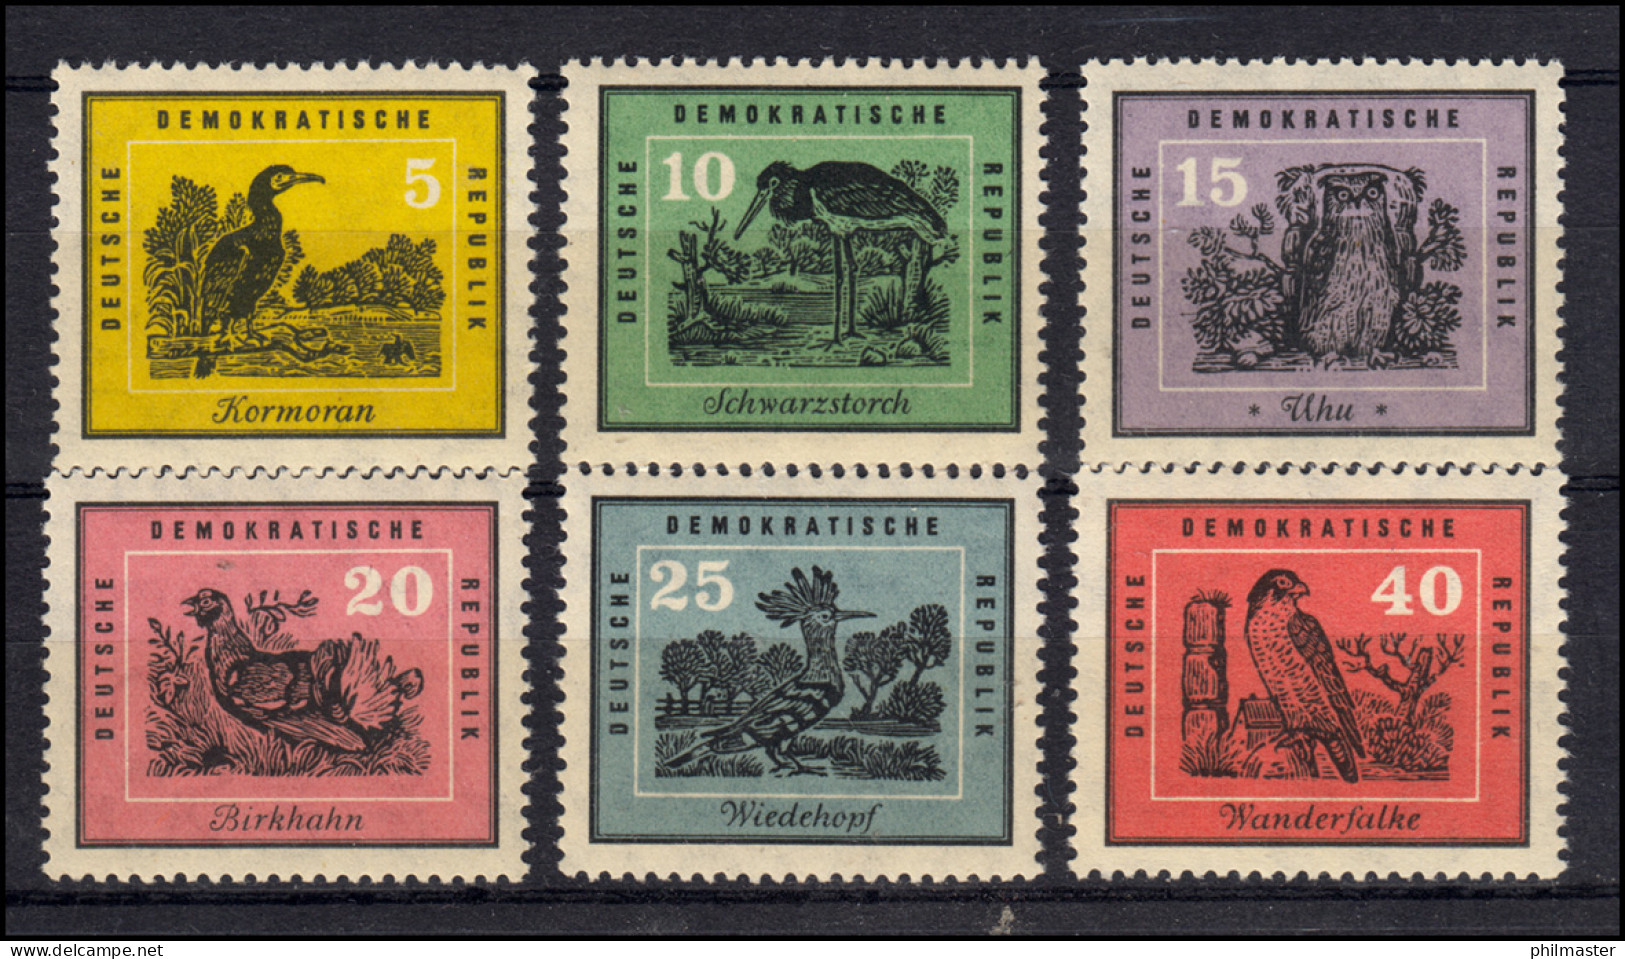 698-703 Heimische Vögel 1959 - Satz **, Sperrwert 700 Geprüft Schönherr BPP - Unused Stamps